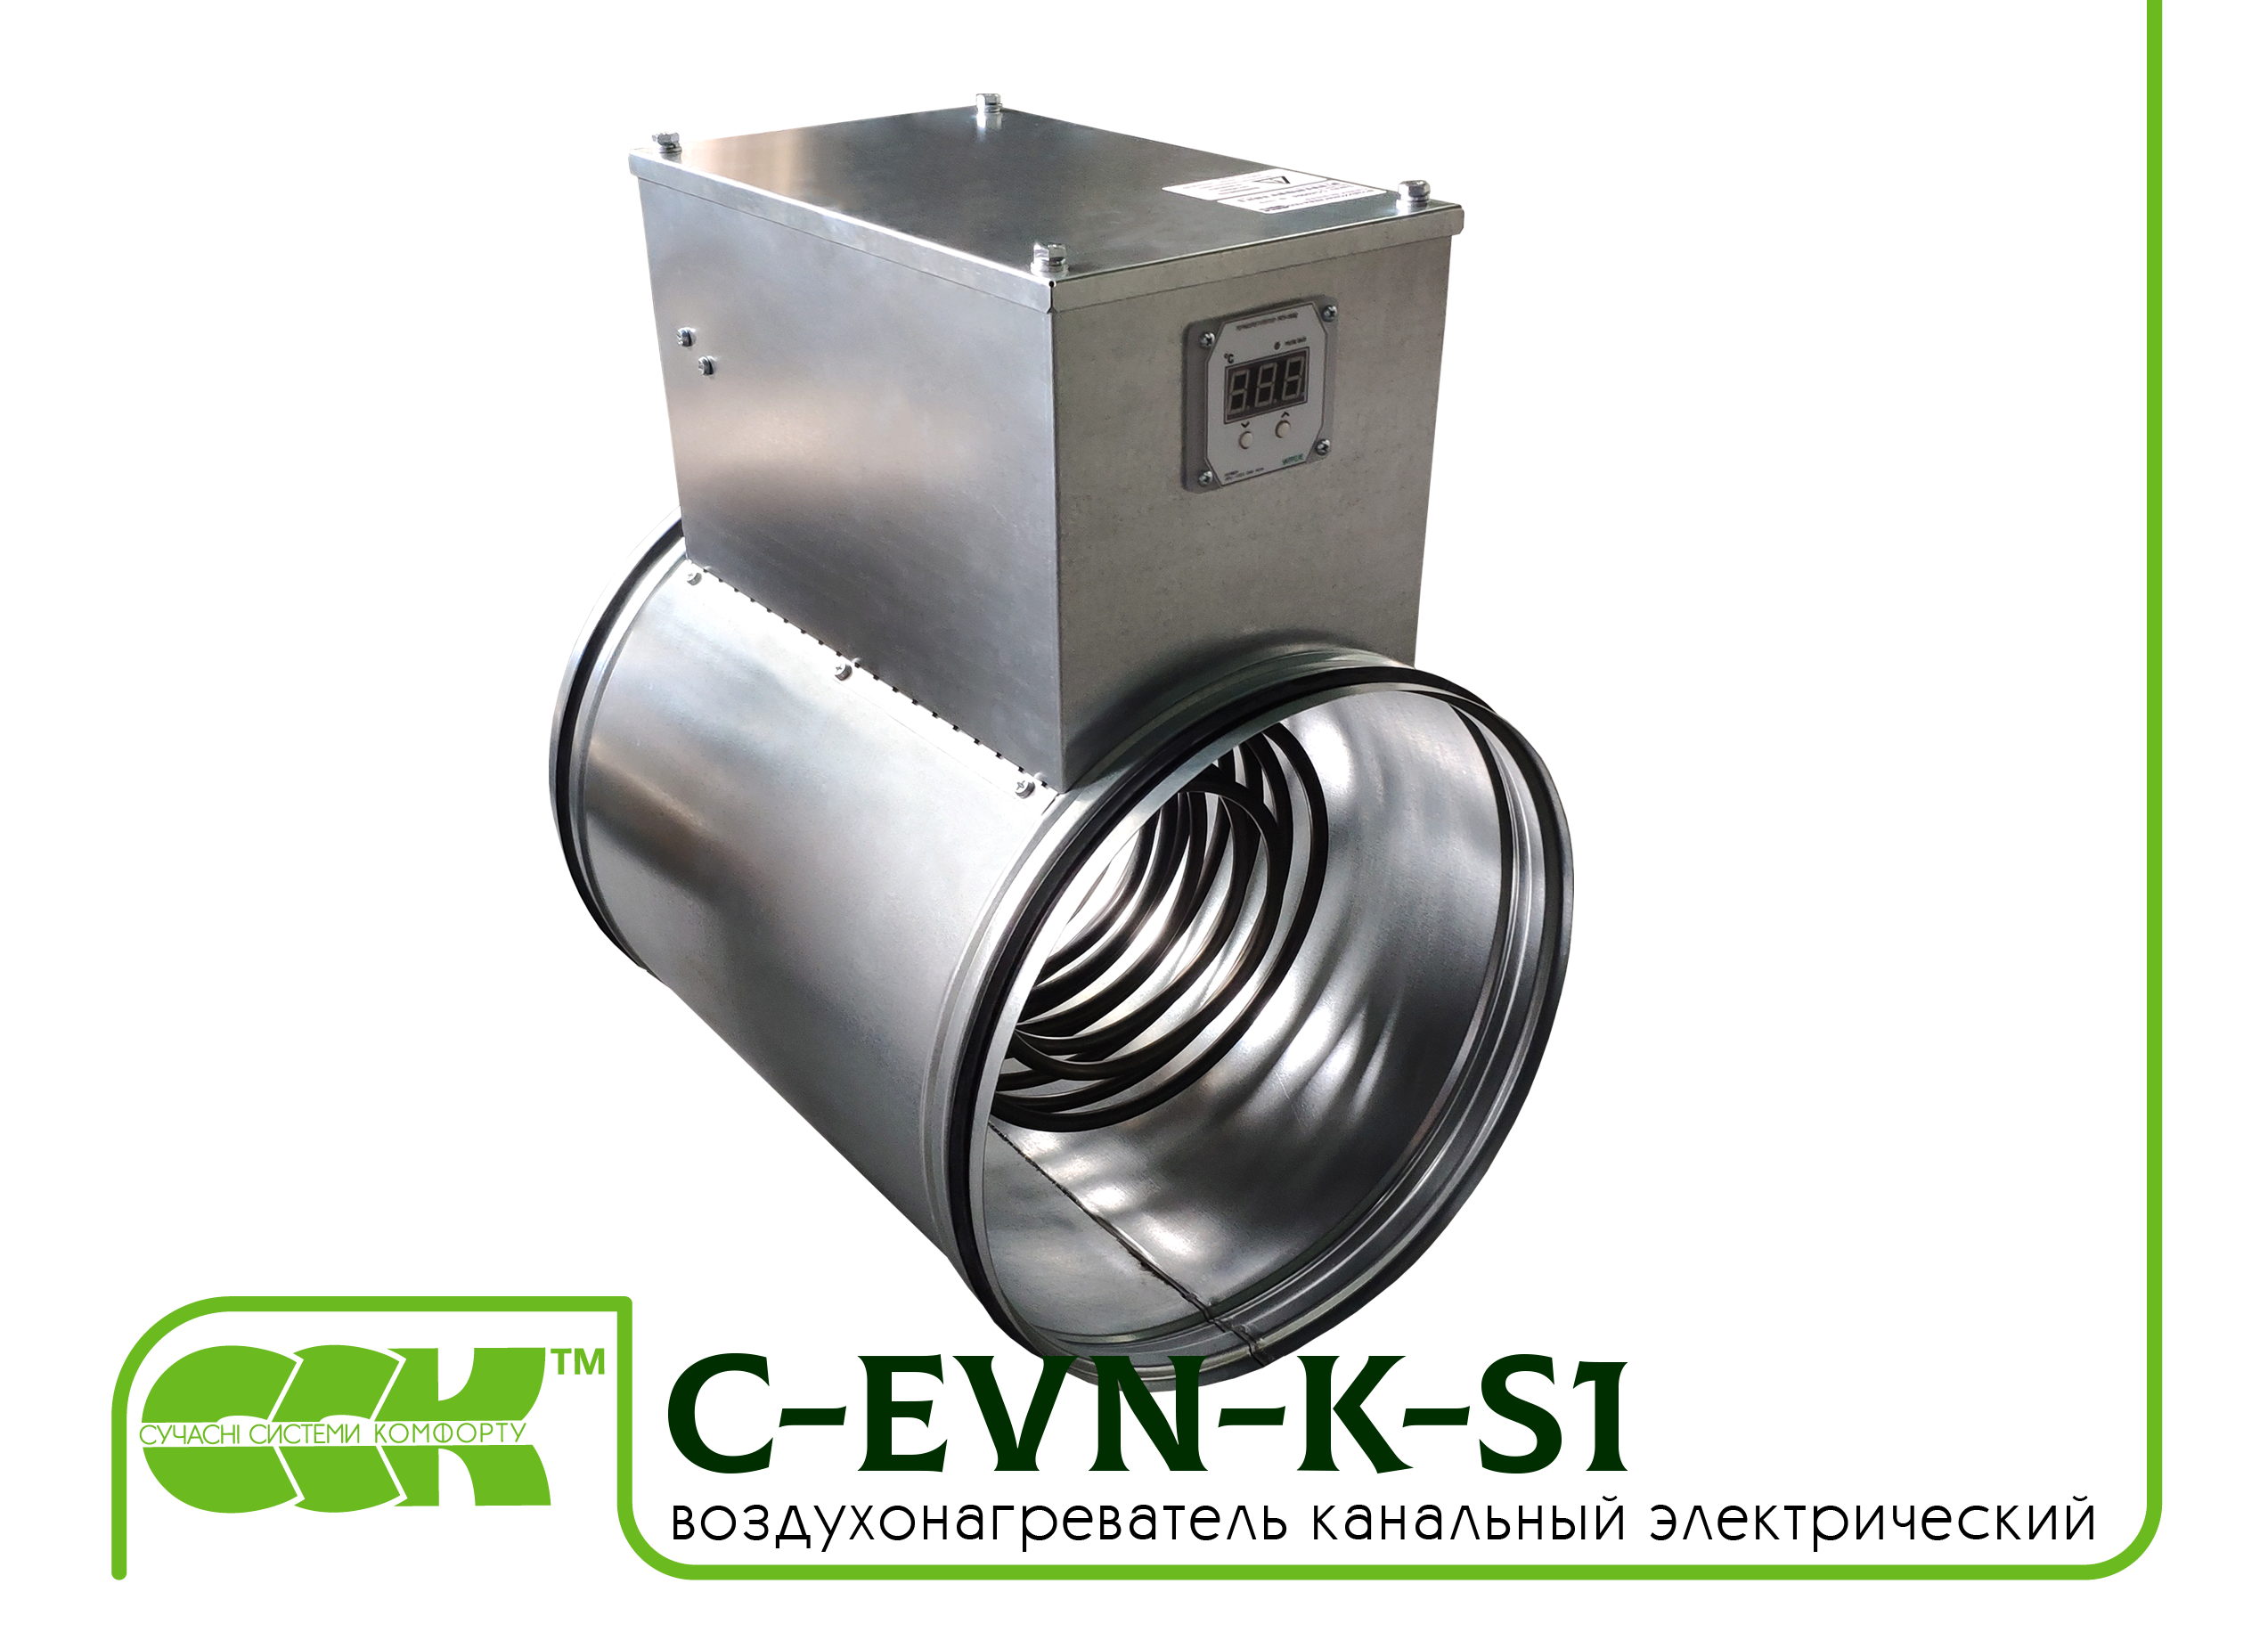 Воздухонагреватель канальный электрический для круглых каналов C-EVN-K-S1-200-3,0